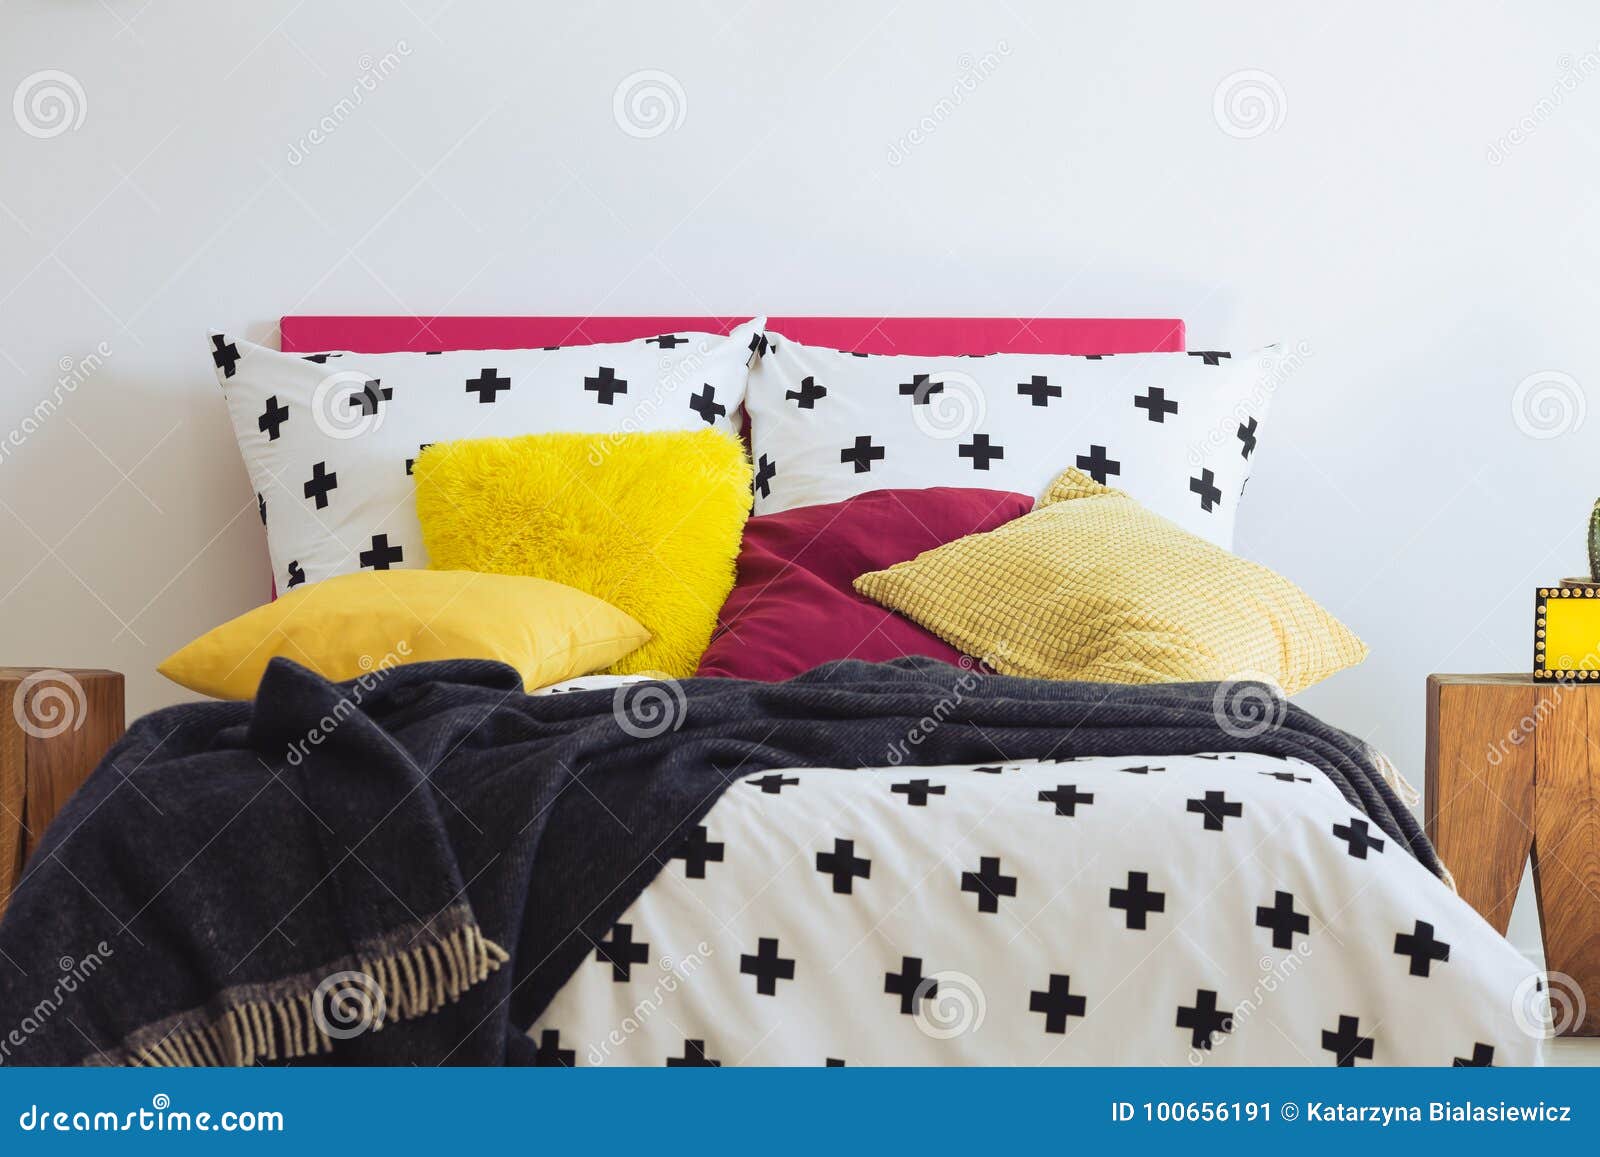 Blue Blanket On King Size Bed Stock Image Image Of Design